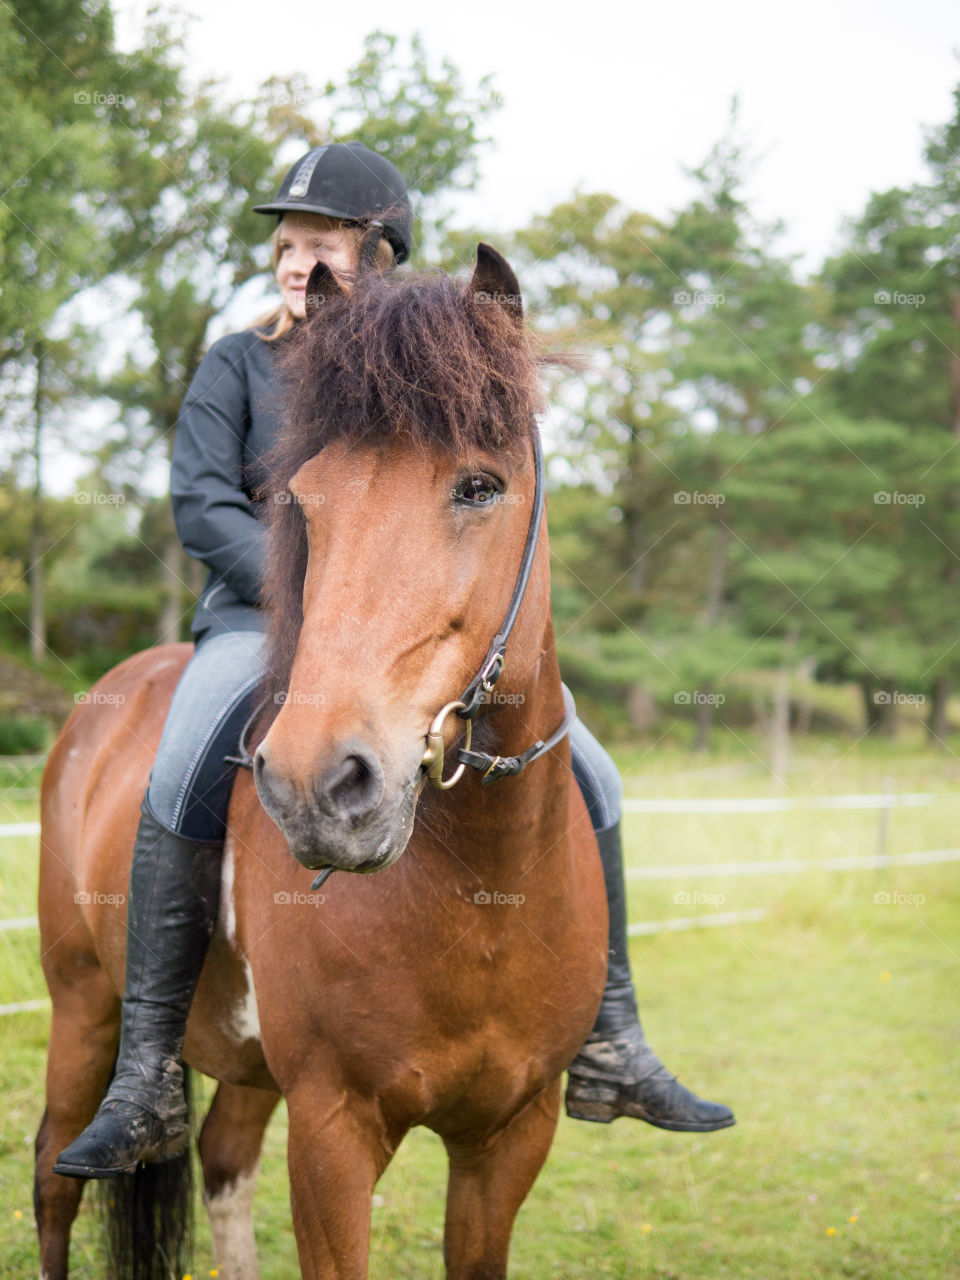 #häst #horse #islandshäst #ryttare #hästtjej #ridning #riding #horsebackriding #barbacka #Lumix Barbackaridning #trav #galopp #skritt #skritta #träns #sommar #sverige #svensksommar #sommarlov #stockholm #sweden #swedishsummer #summer 